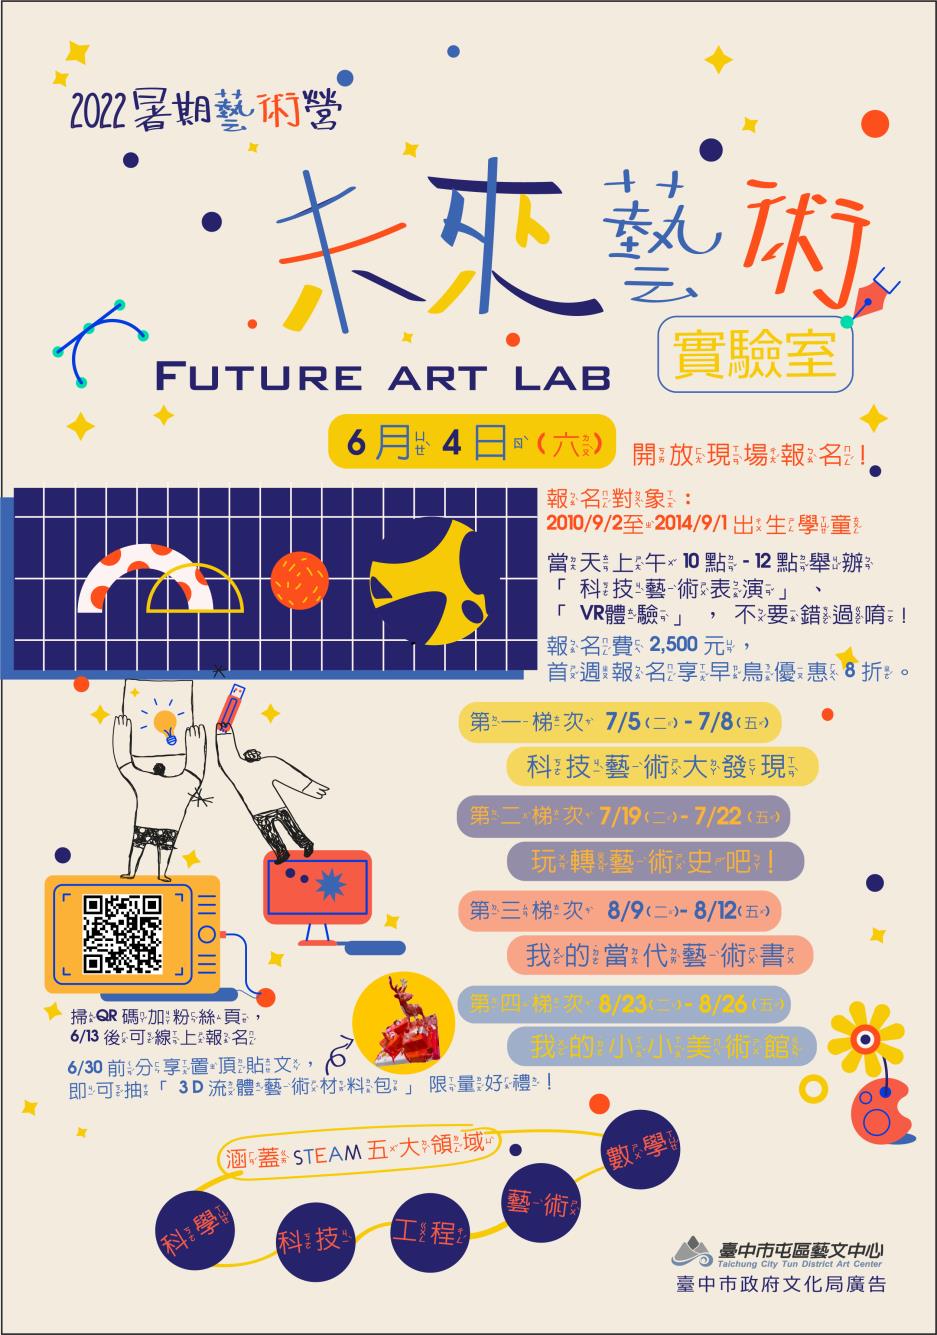 【2022暑期藝術營-未來藝術實驗室】線上報名開放中！